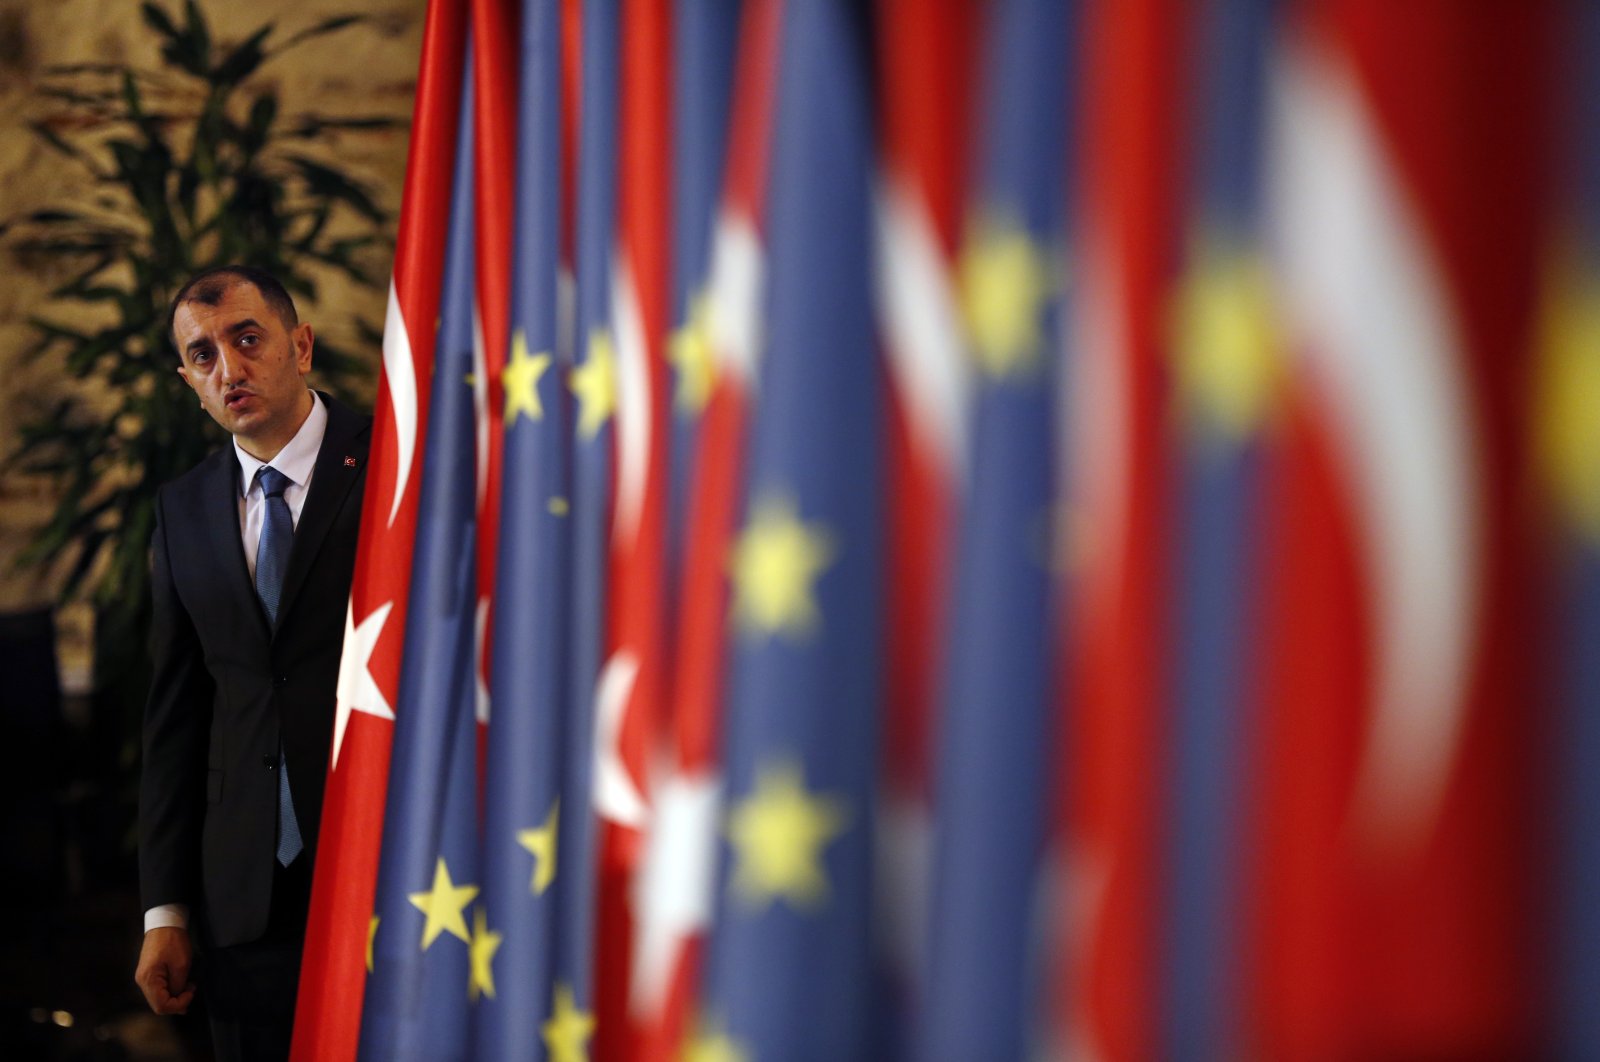 Η θετική ορμή μπορεί να προωθήσει τις σχέσεις Τουρκίας-ΕΕ: επιτροπή